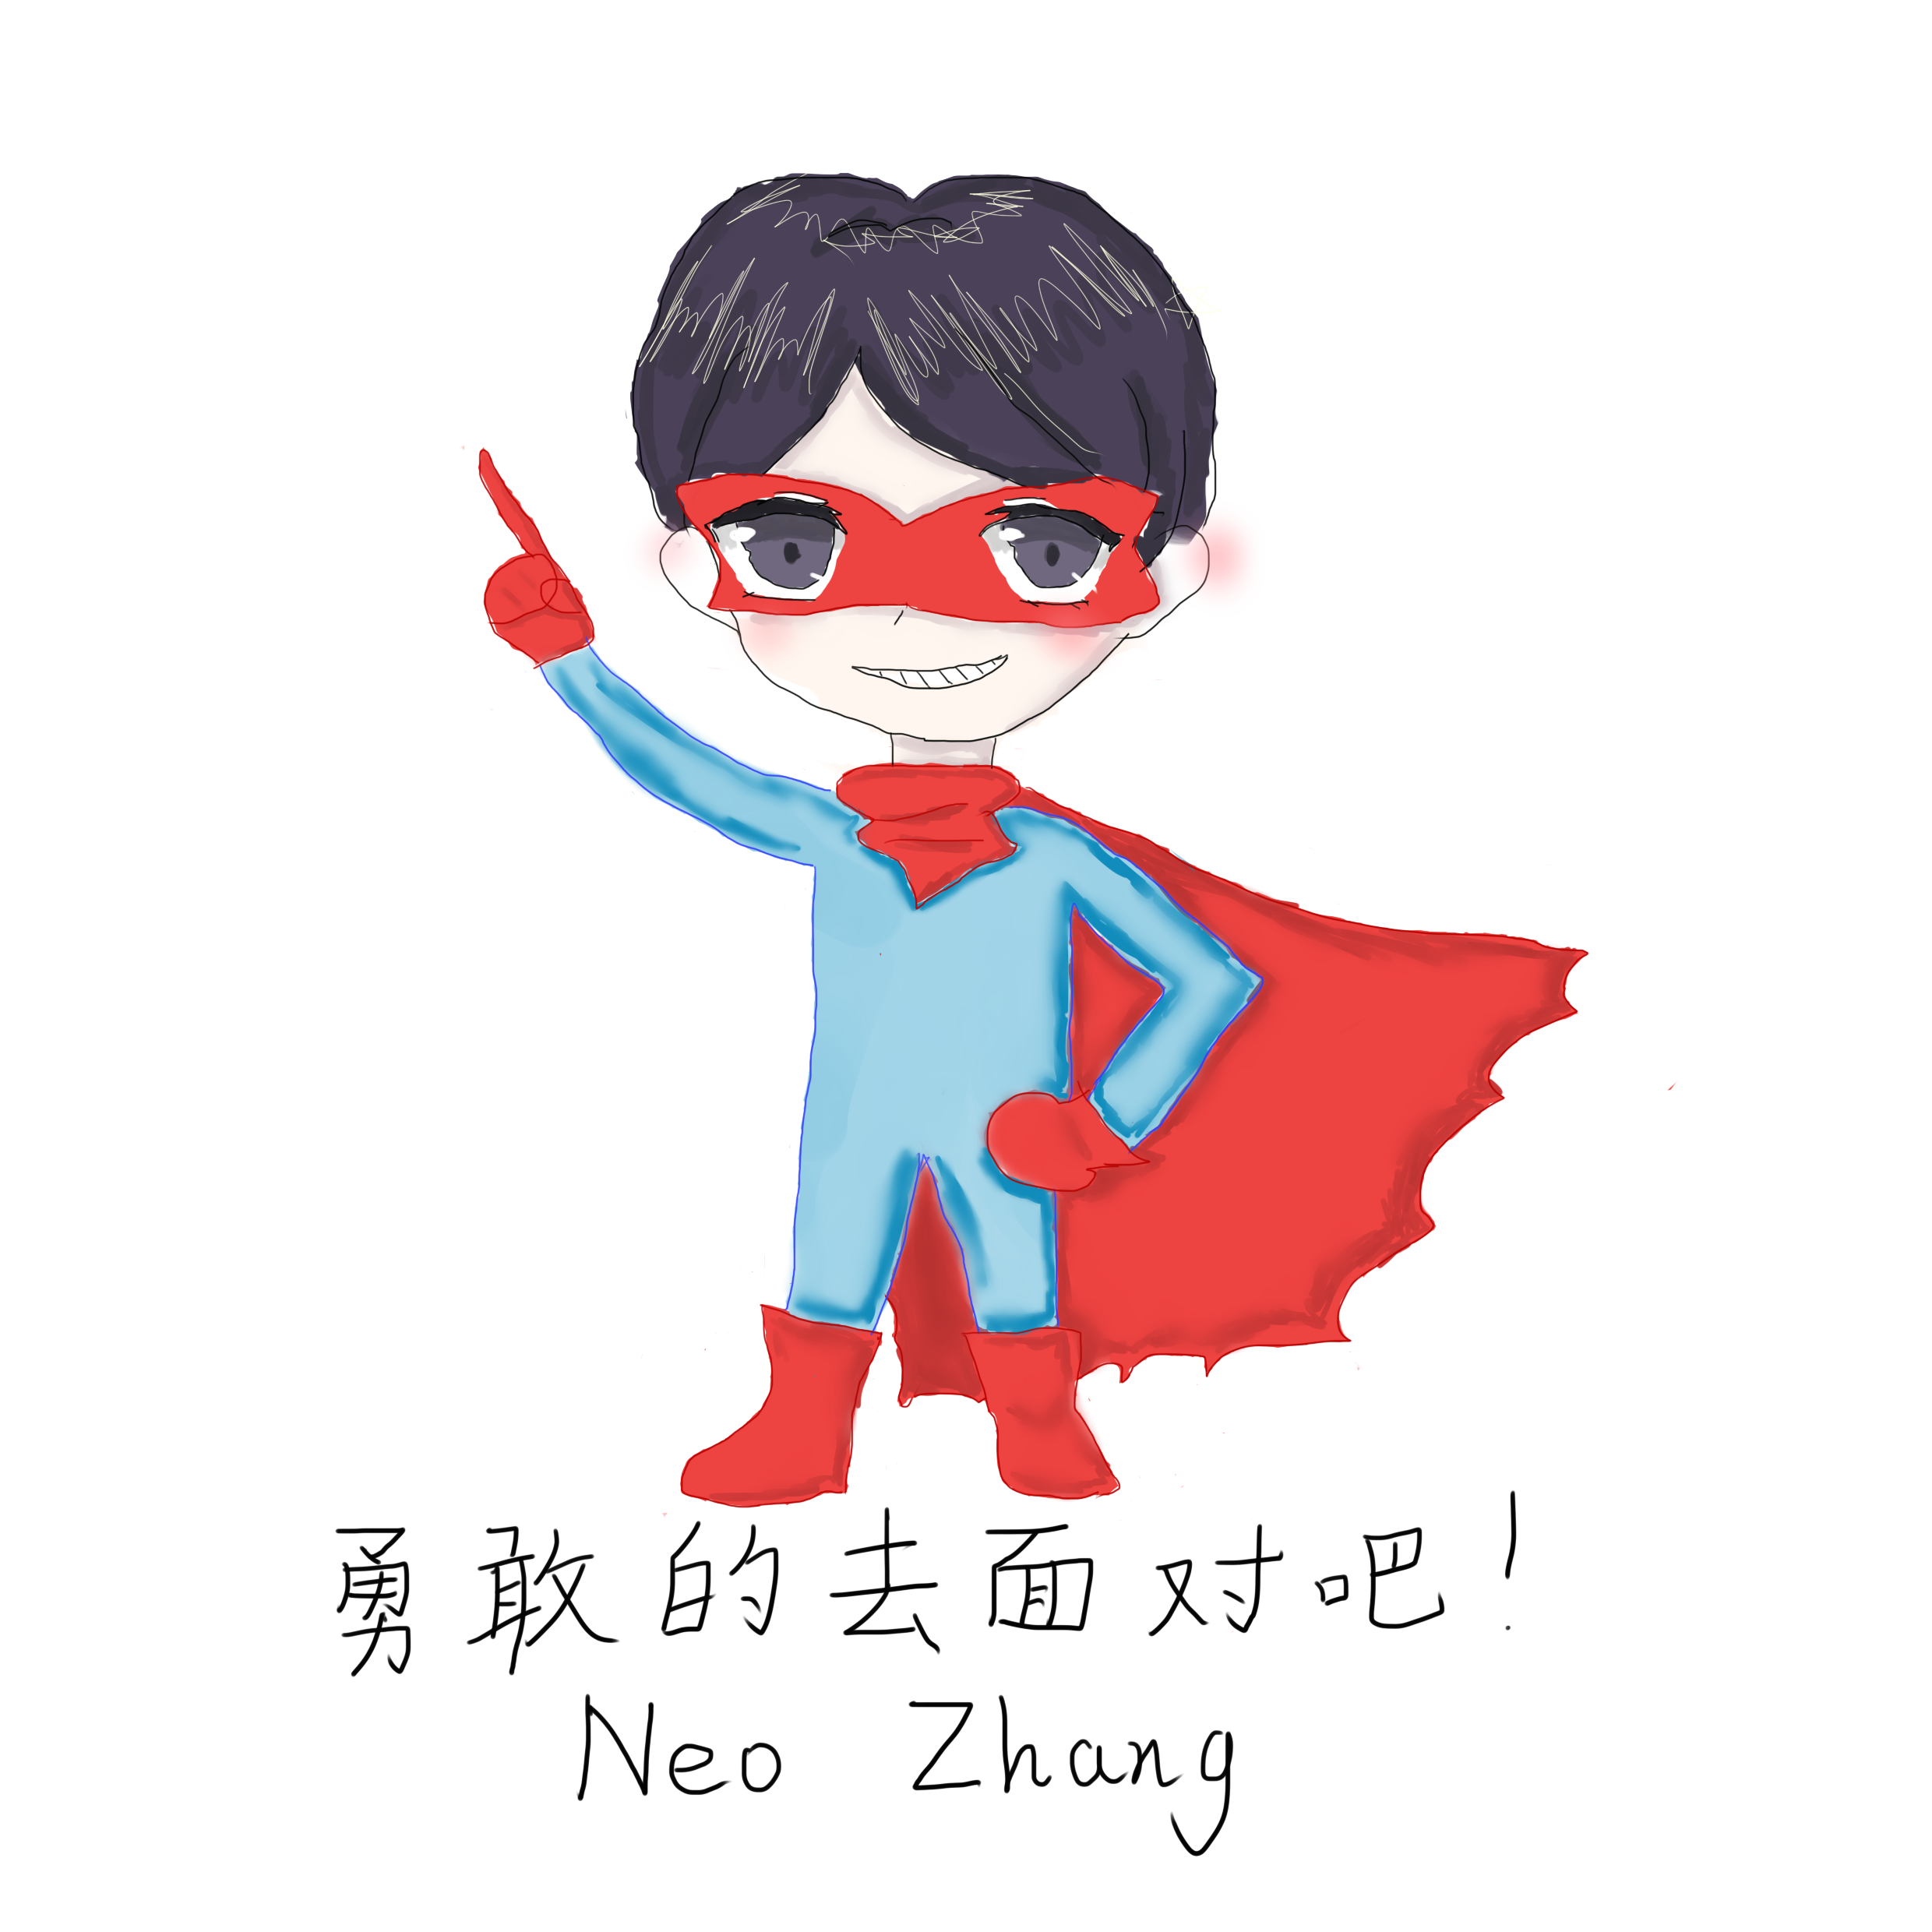 Neo Zhang